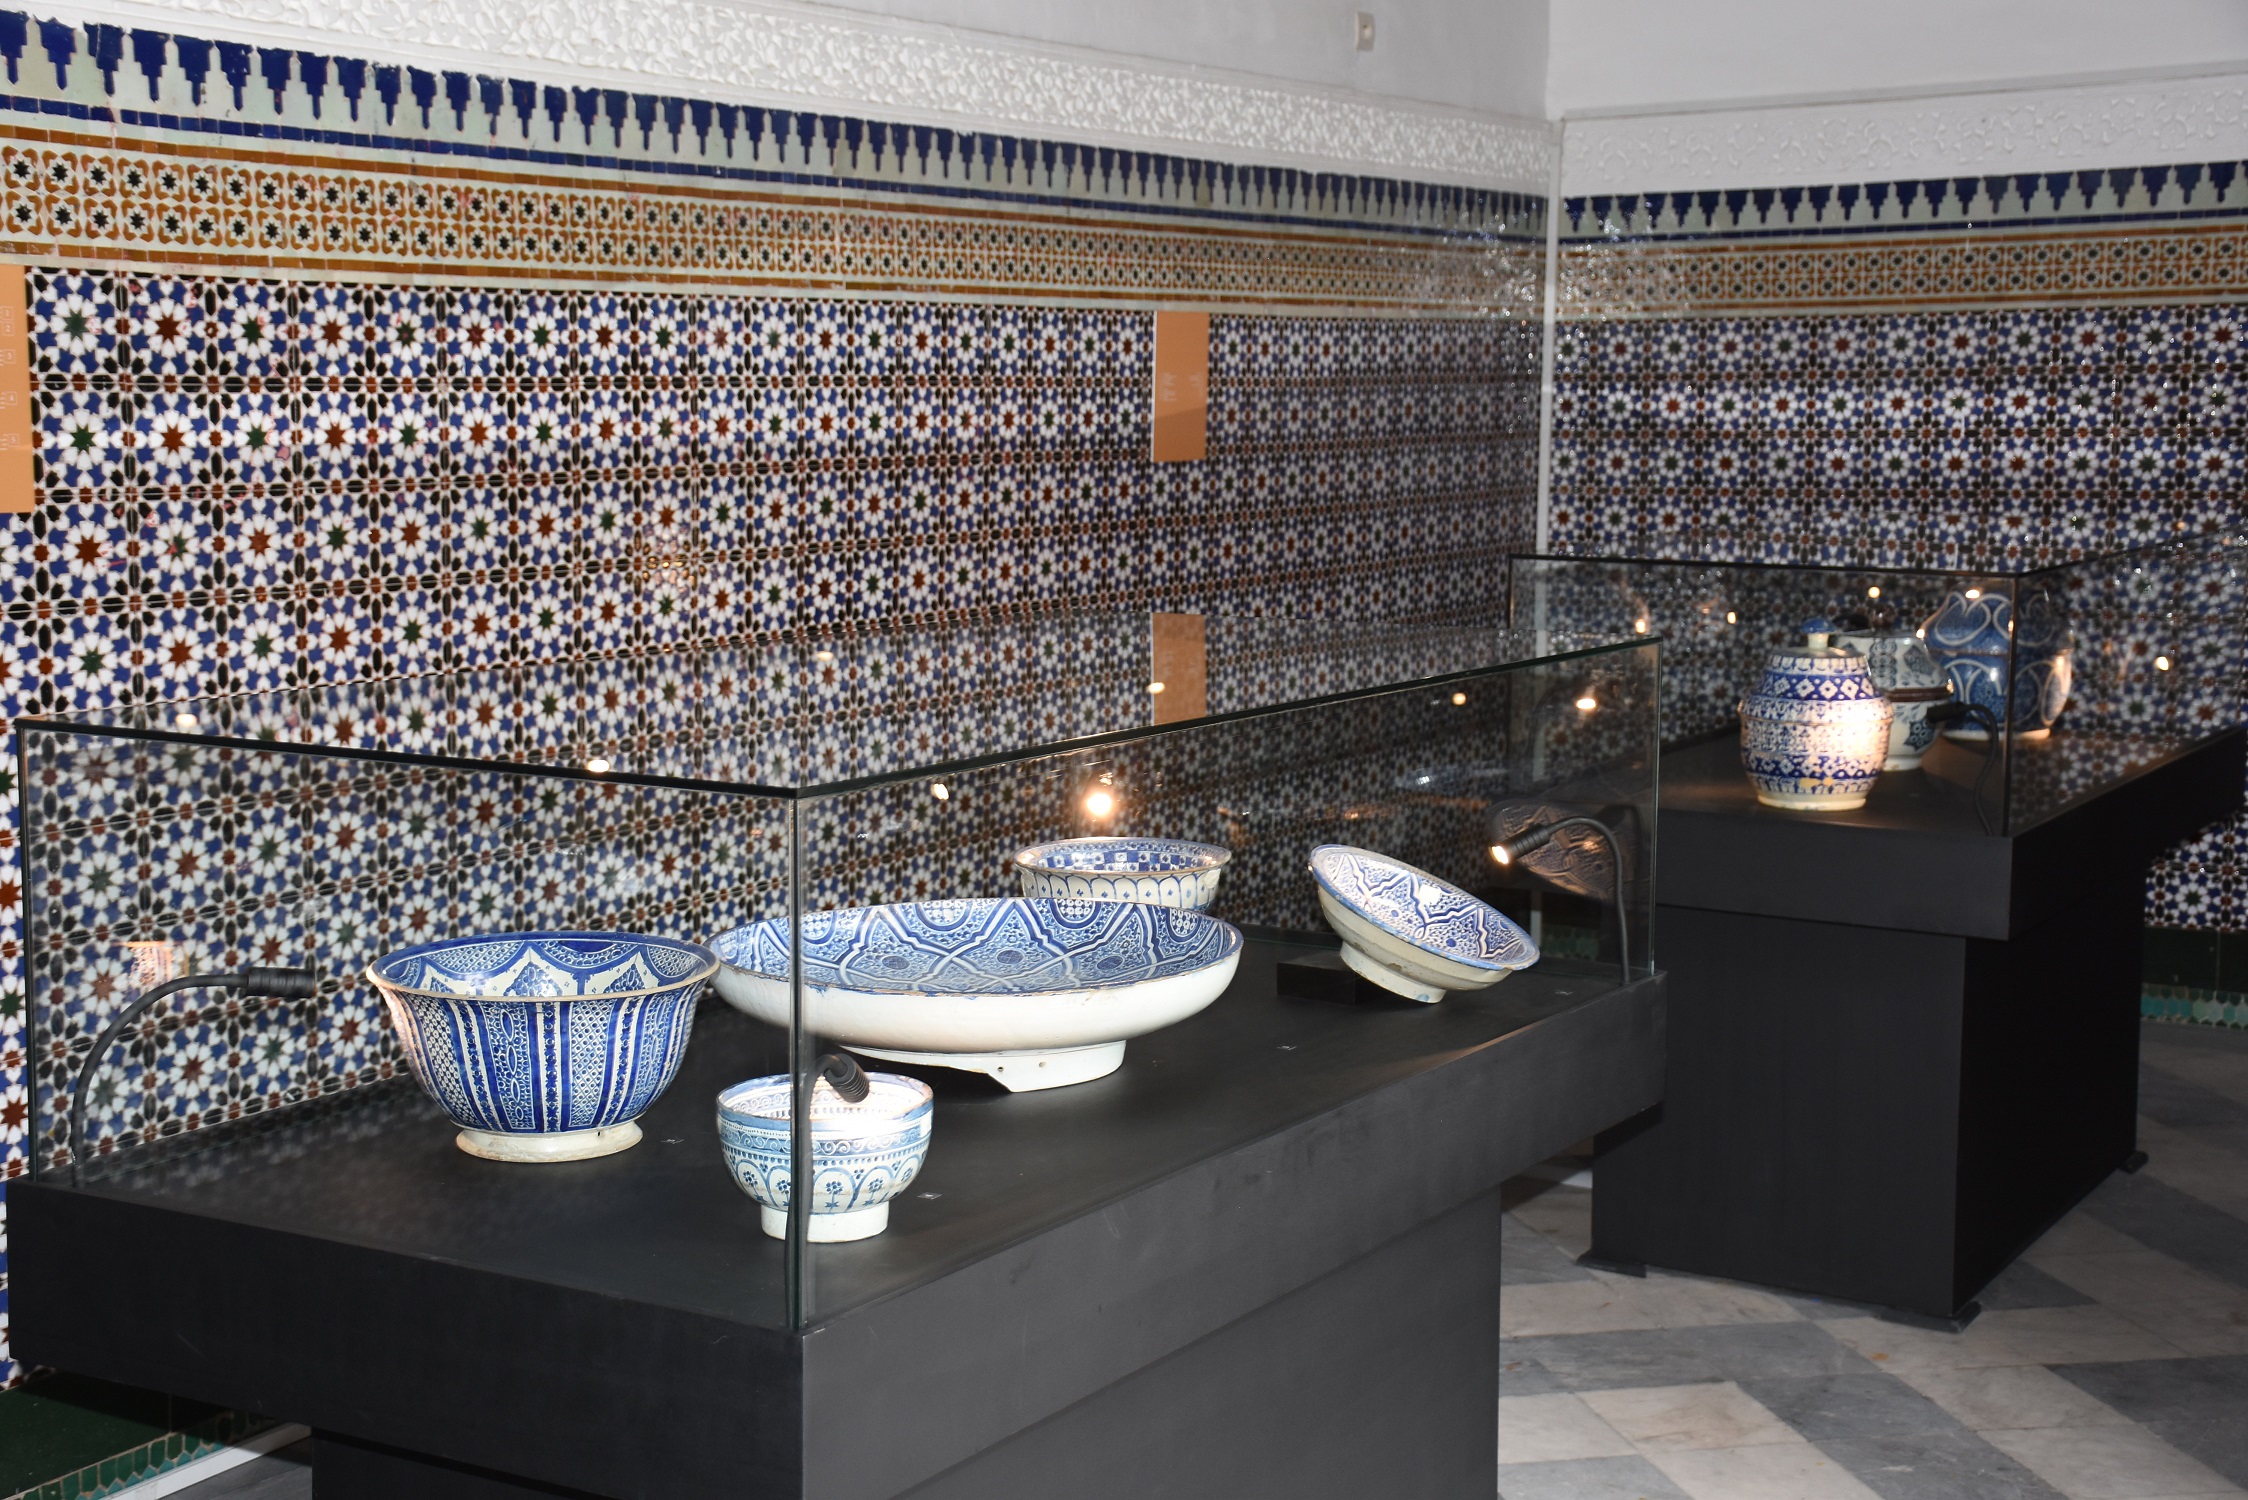 Regards sur le patrimoine marocain au Musée des Confluences-Dar El Bacha à Marrakech 